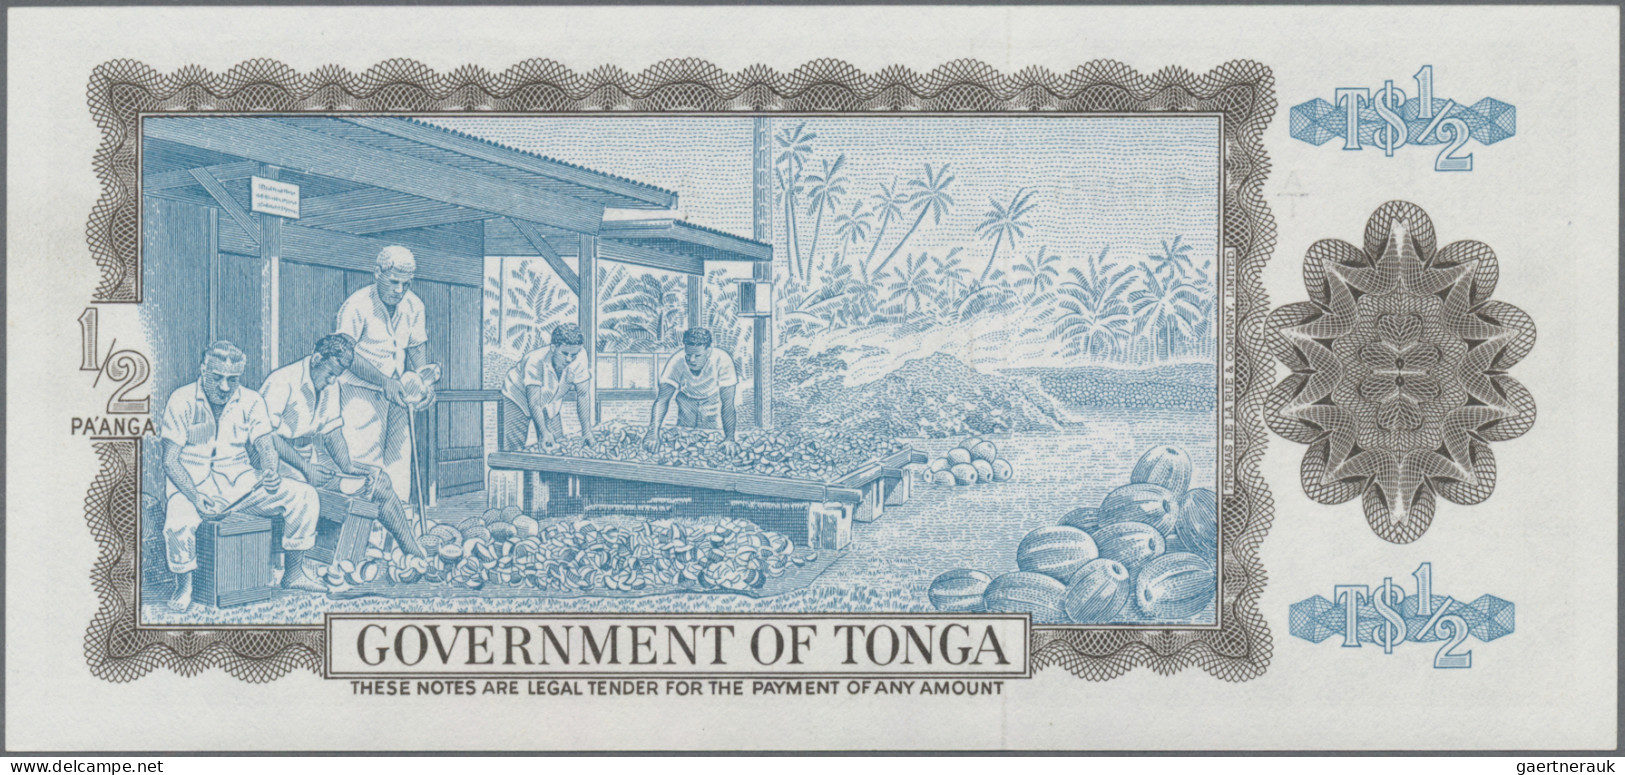 Tonga: Government Of Tonga, ½ Pa'anga, 3rd April 1967, P.13a In UNC Condition. - Tonga